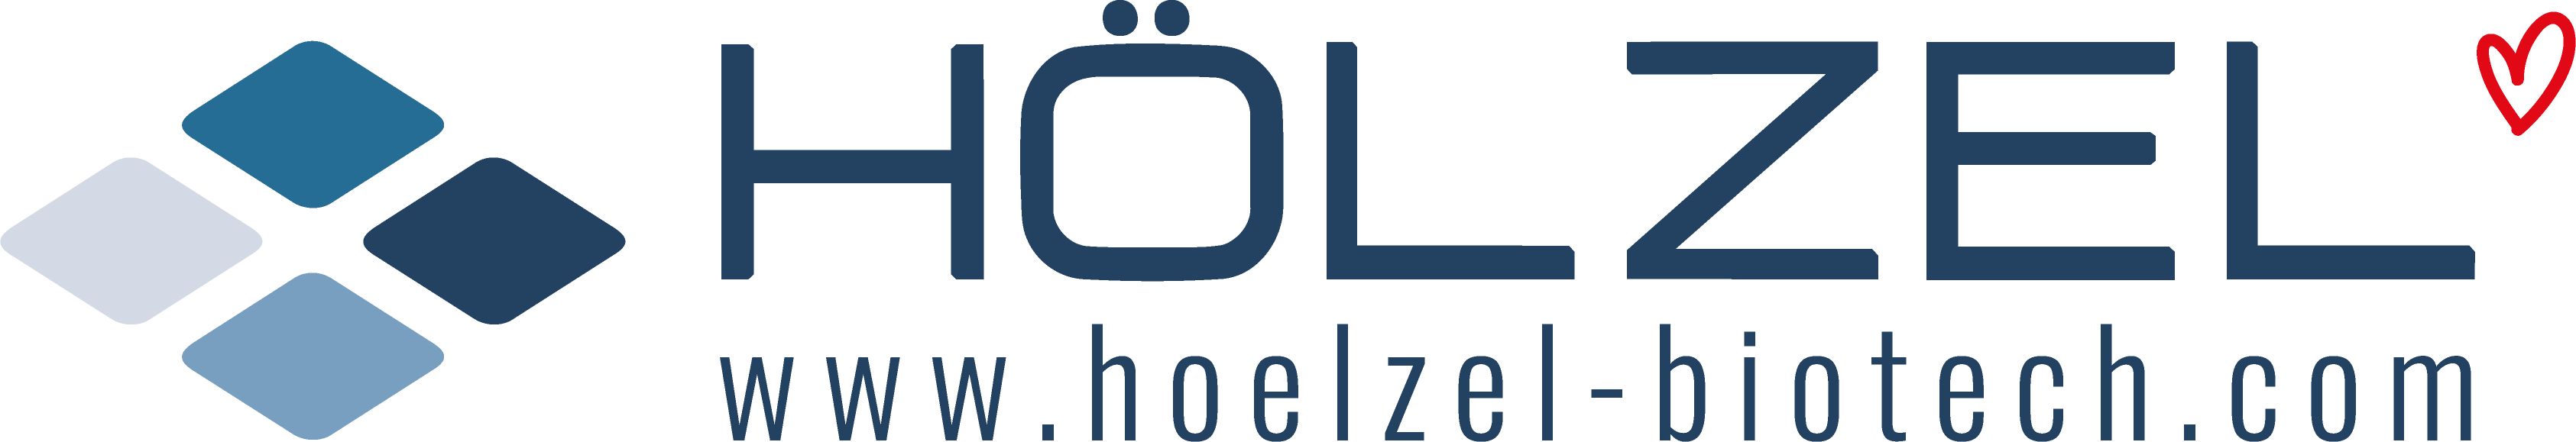 distributors: Hölzel Diagnostika Handels GmbH logo